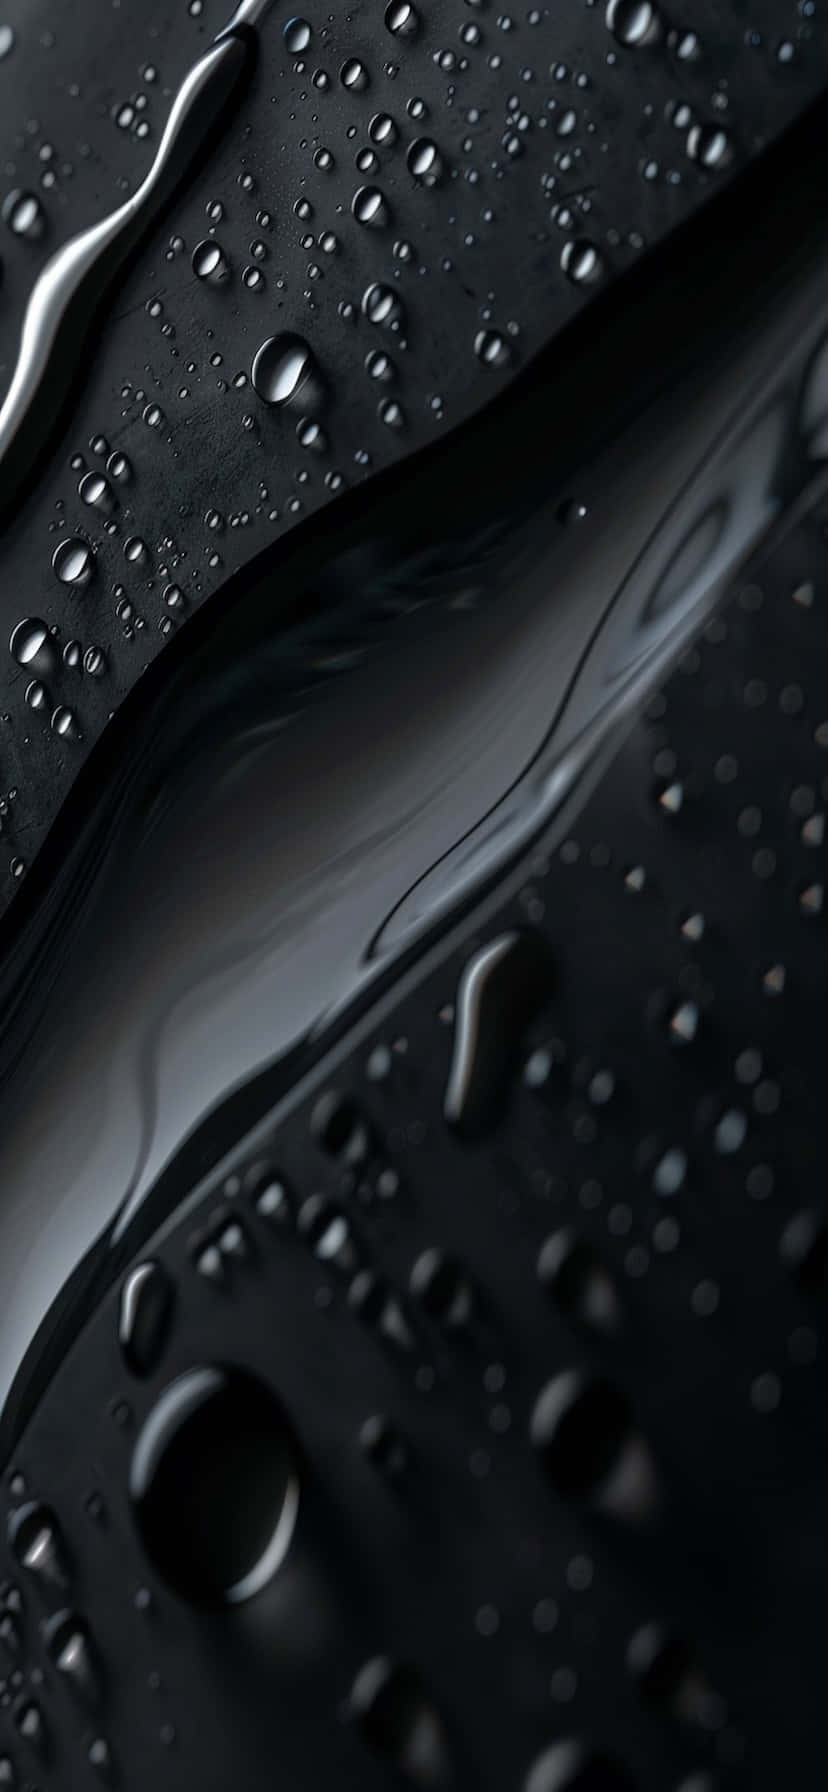 Blacki Phone X R Water Resistant Closeup Wallpaper